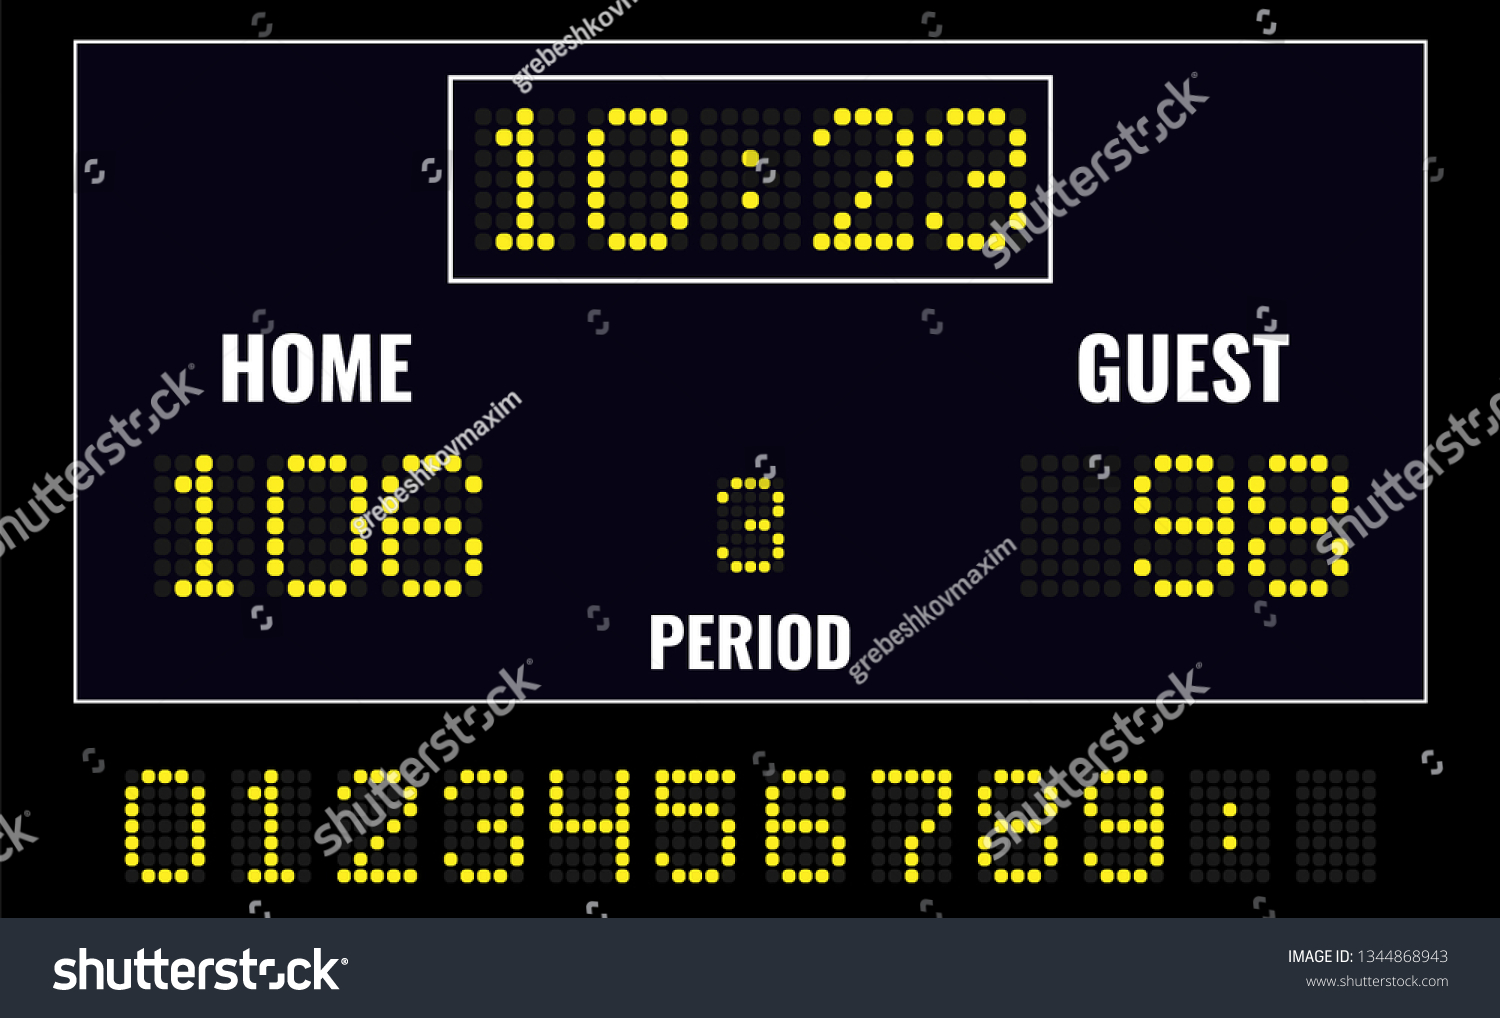 SVG of Basketball LED digital scoreboard svg